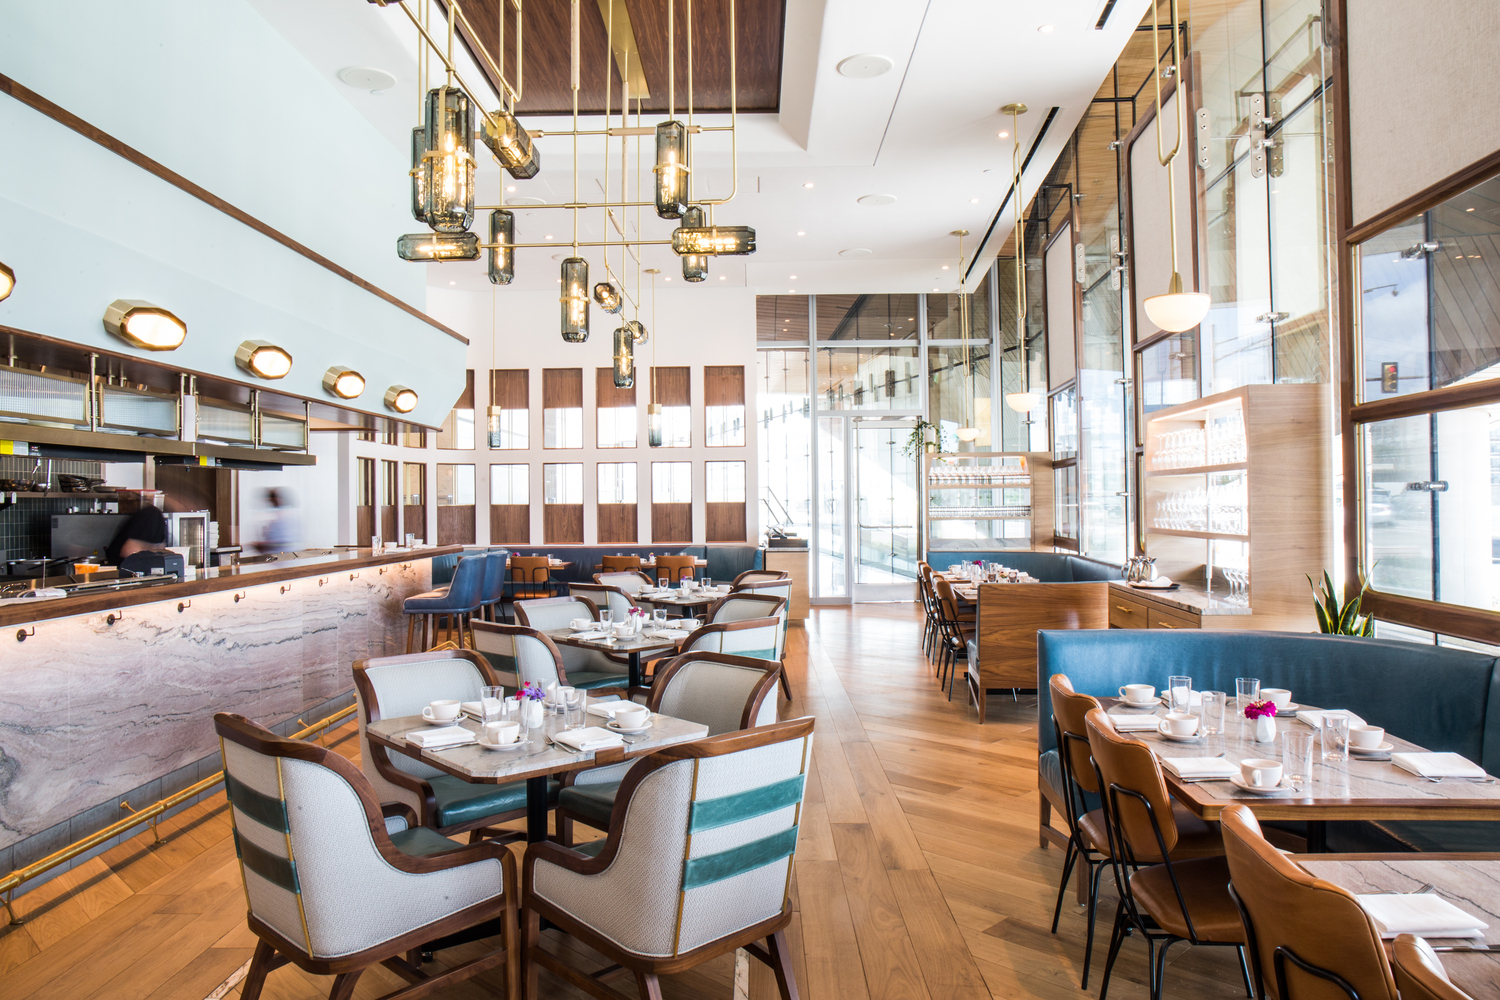 Ambiente de restaurante moderno com piso de madeira, cadeiras e bancos azuis e branco e detalhes em madeira.